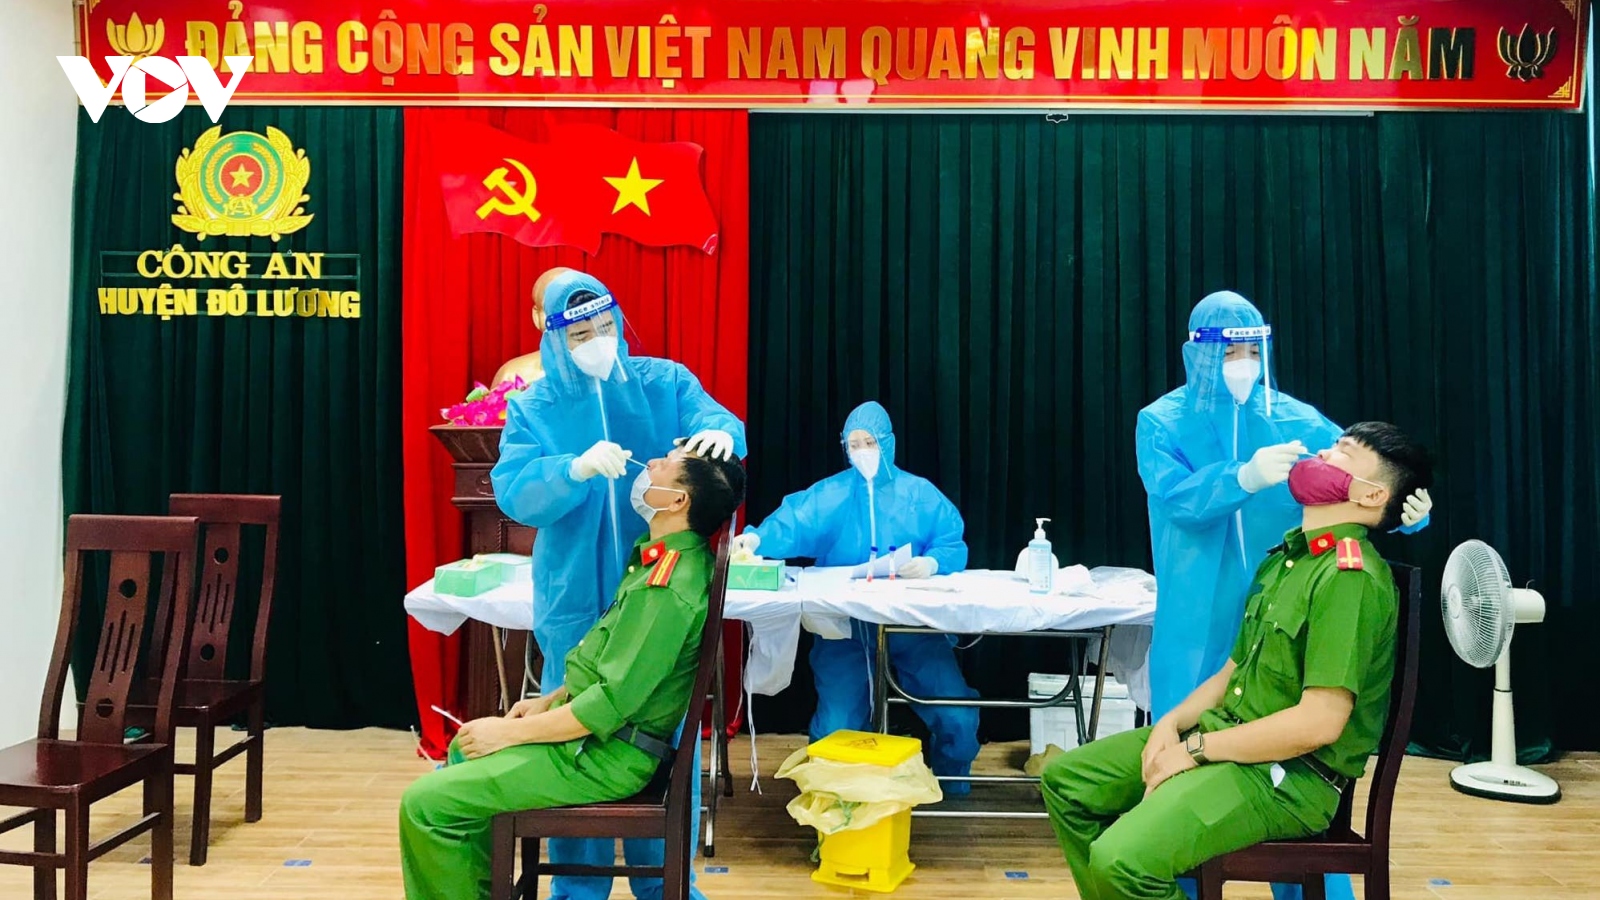 Phong tỏa trụ sở Công an huyện Đô Lương (Nghệ An) vì cán bộ mắc Covid-19